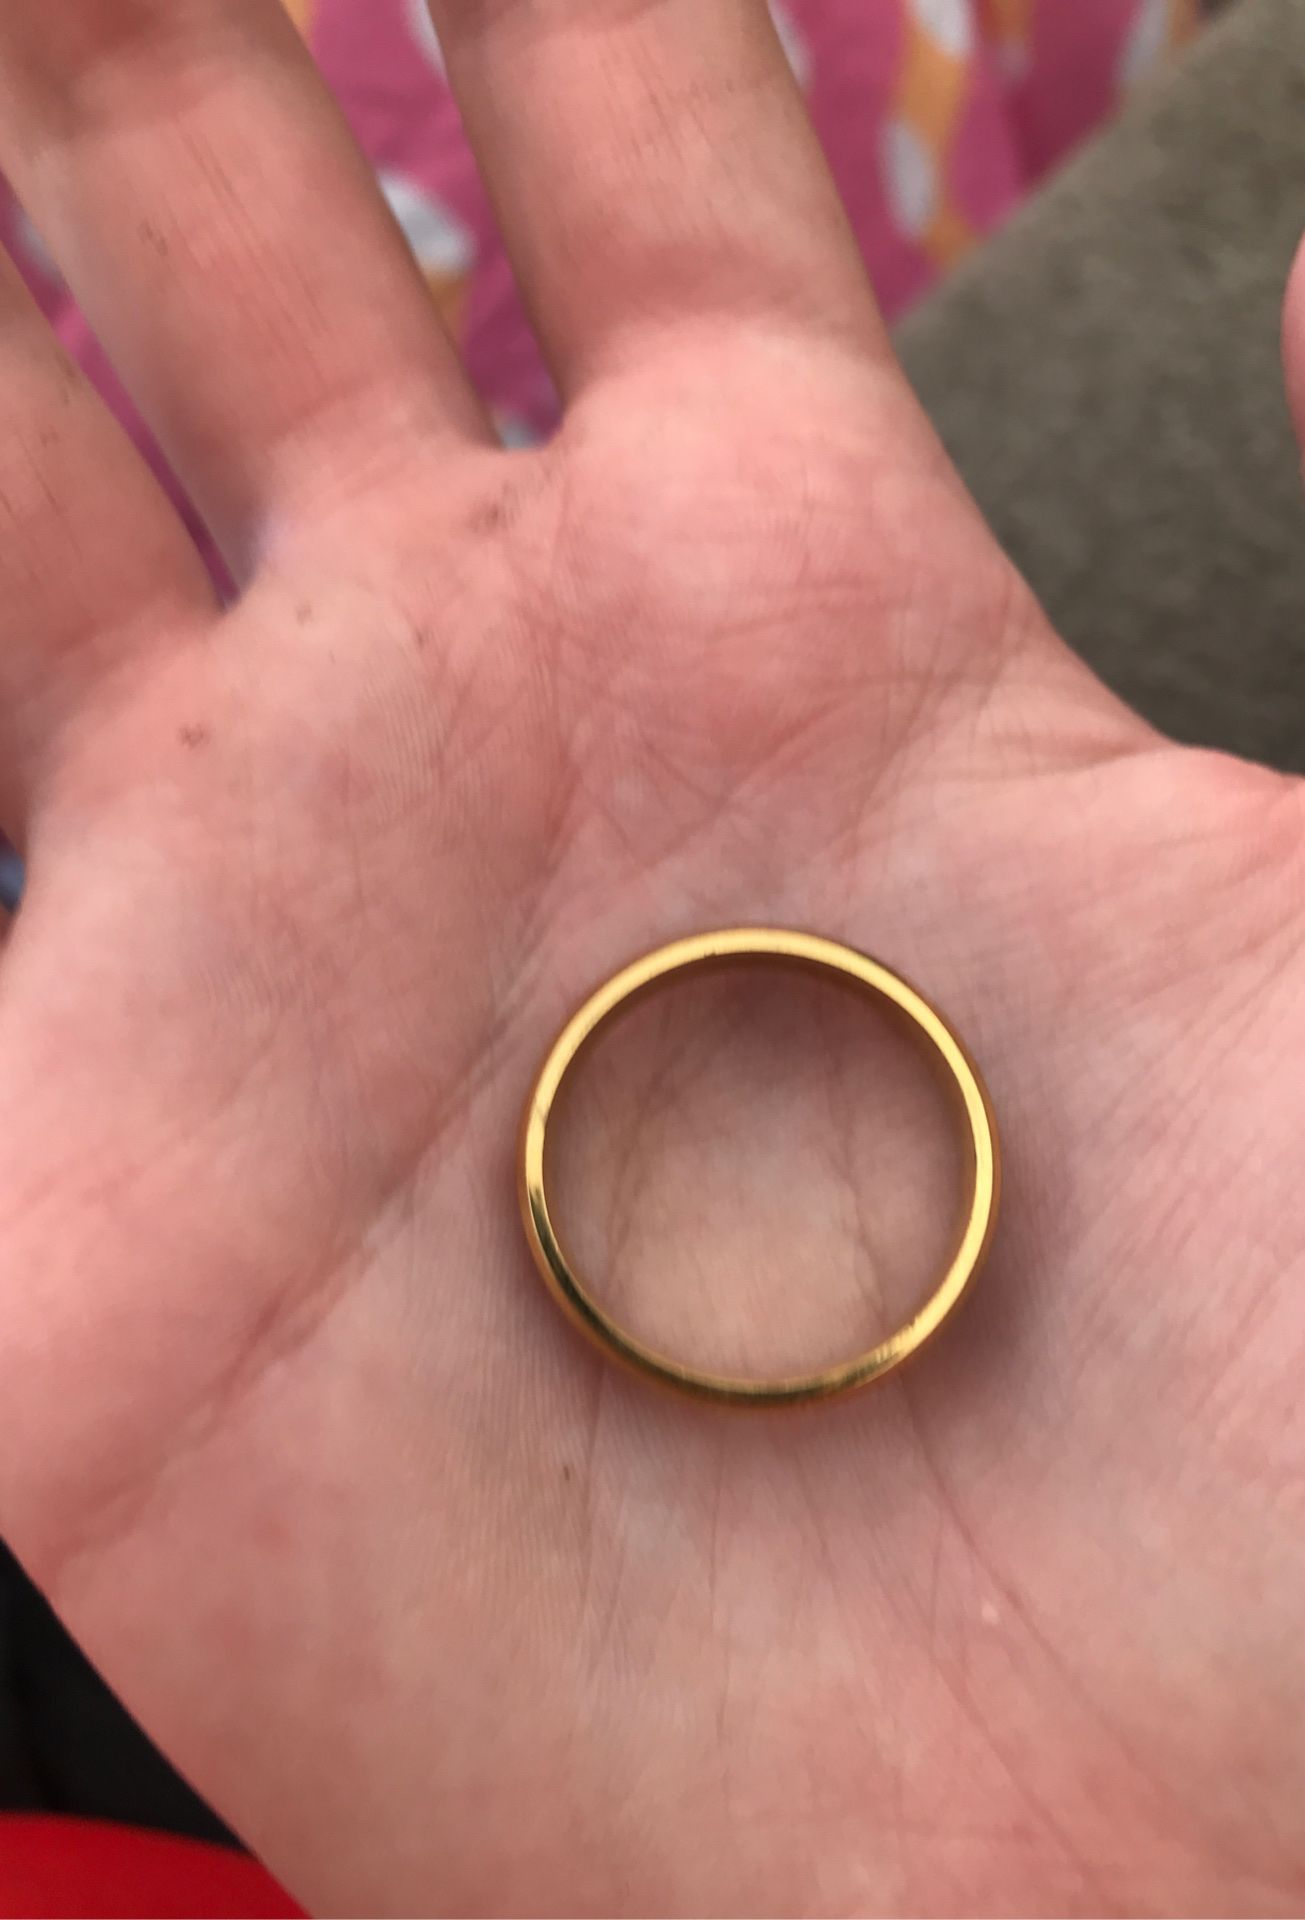 Fake wedding ring